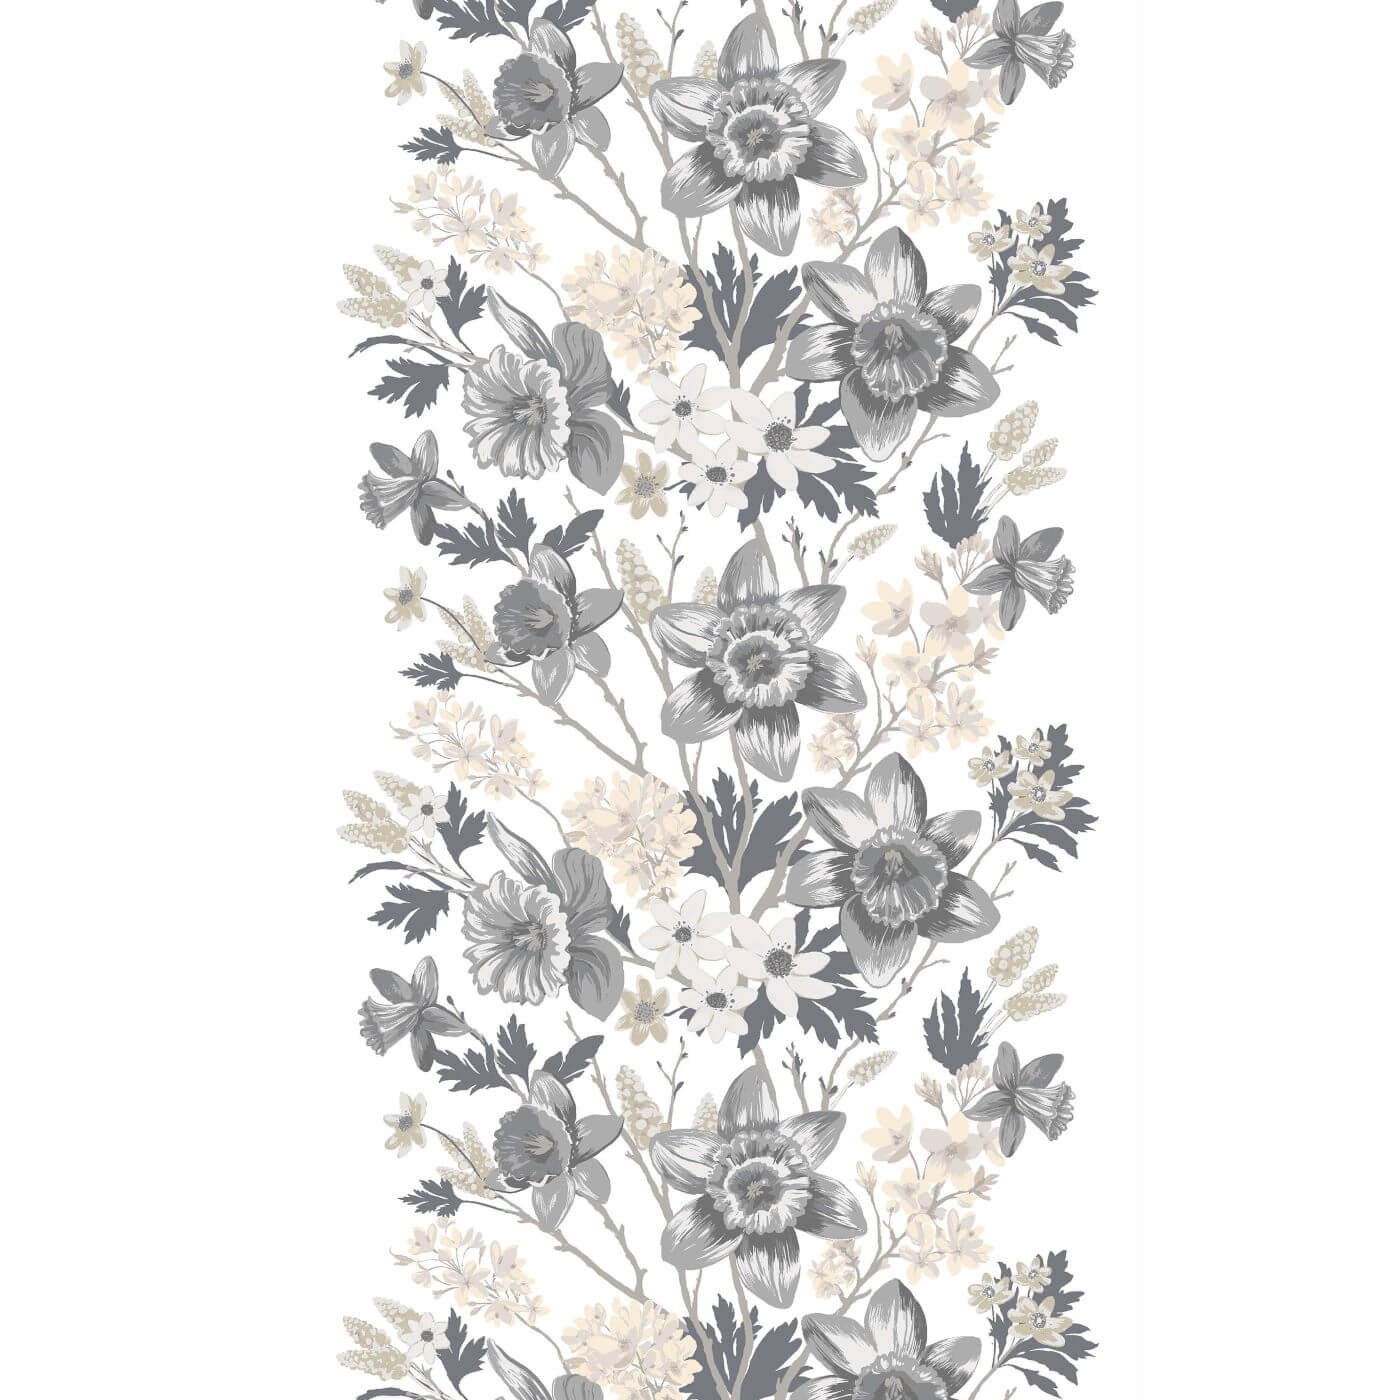 Zasłony gotowe w kwiaty do salonu KEVÄTJUHLA. Wzór skandynawskiej zasłony na taśmie z malowanymi kwiatami w jasnej kolorystyce szaro beżowej na białym tle